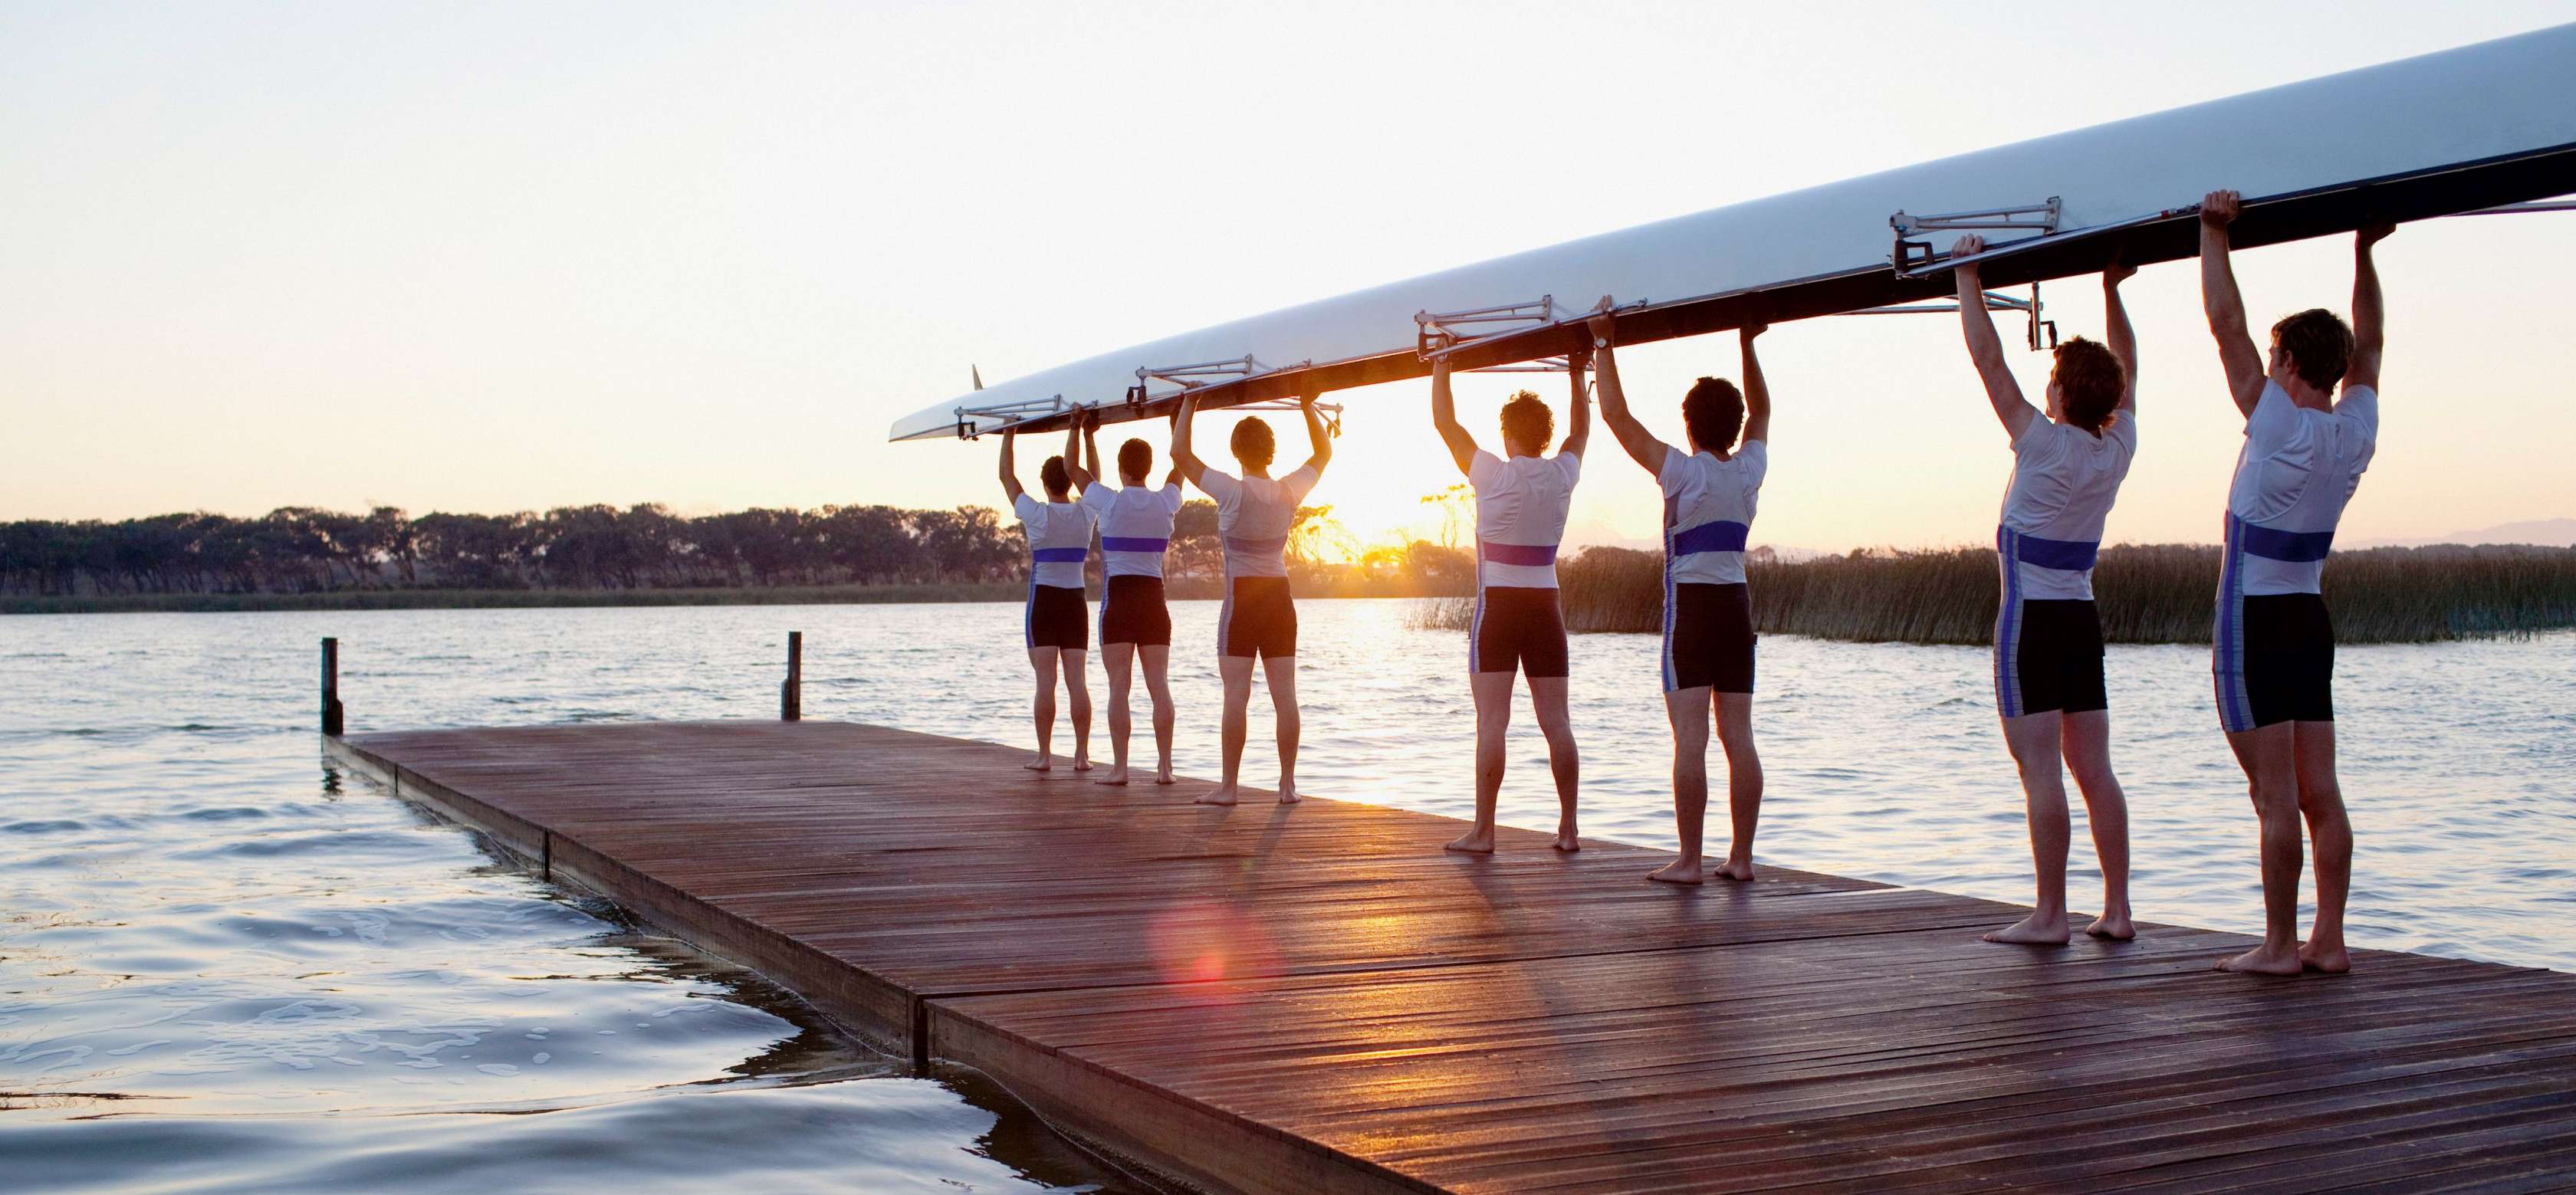 Vereinsversicherung - Gruppe von Ruderern steht mit Boot auf einem Steg am Wasser